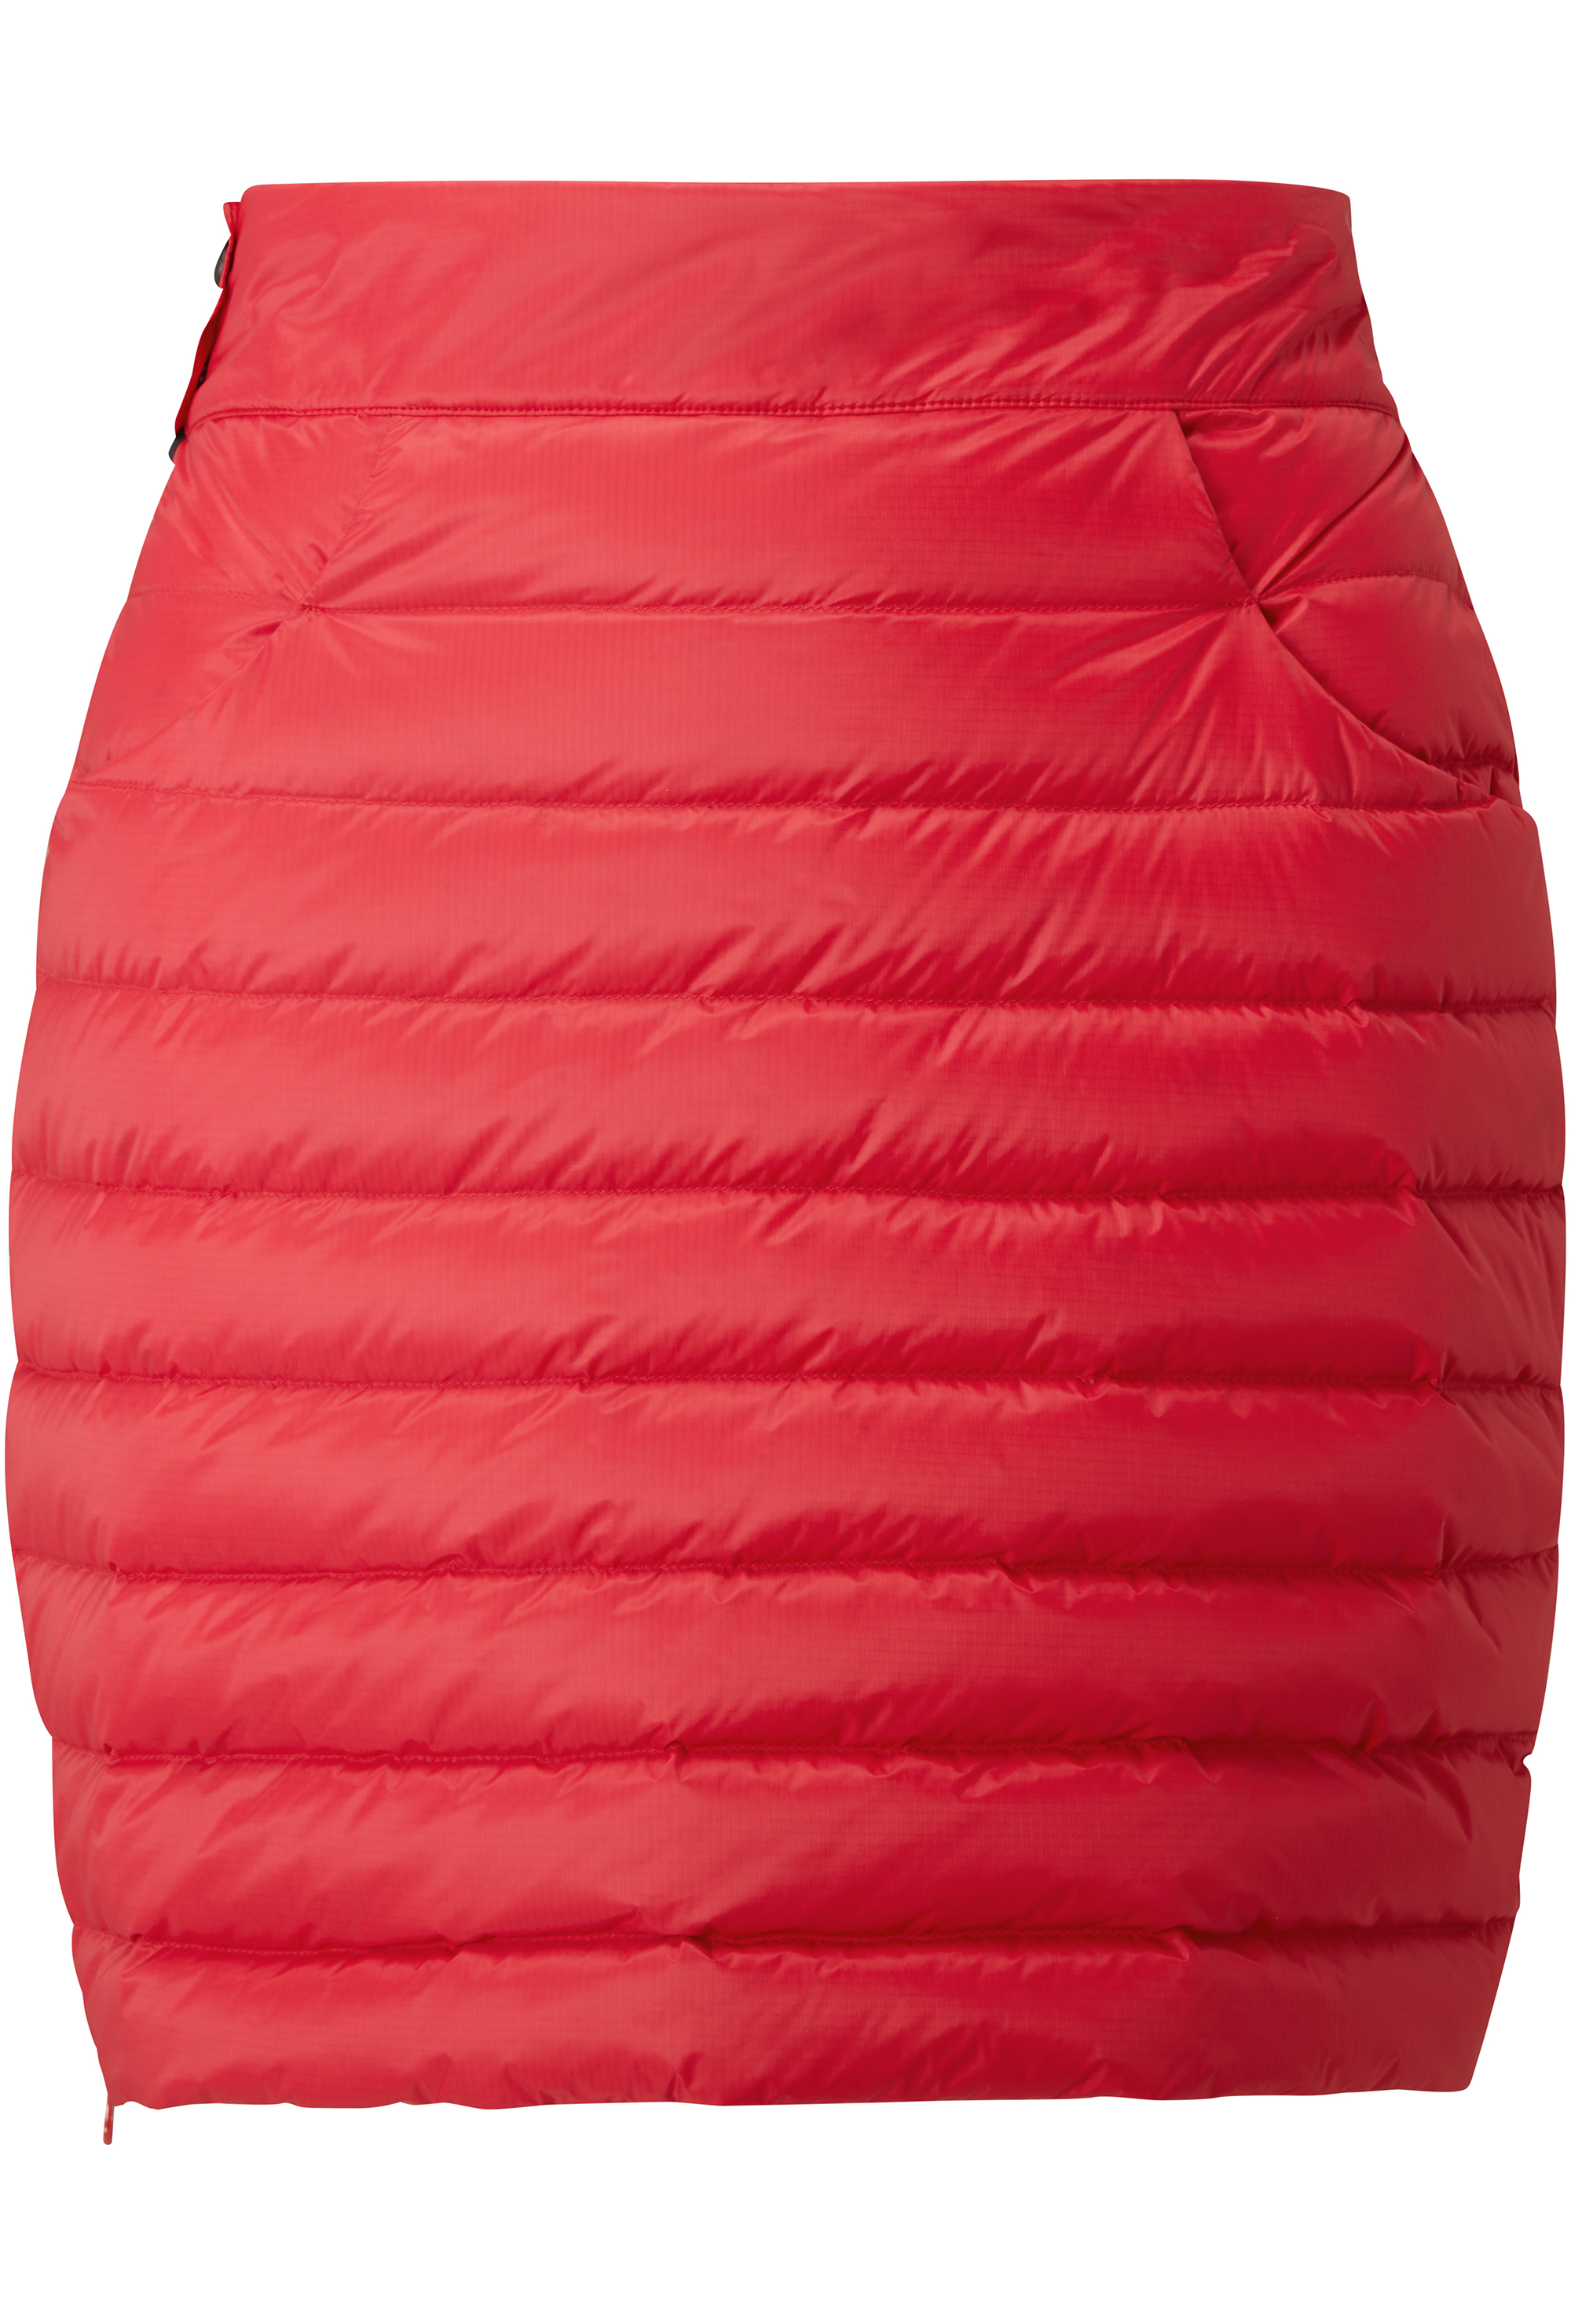 Dámská péřová sukně MOUNTAIN EQUIPMENT W's Frostline Skirt Capsicum Red S